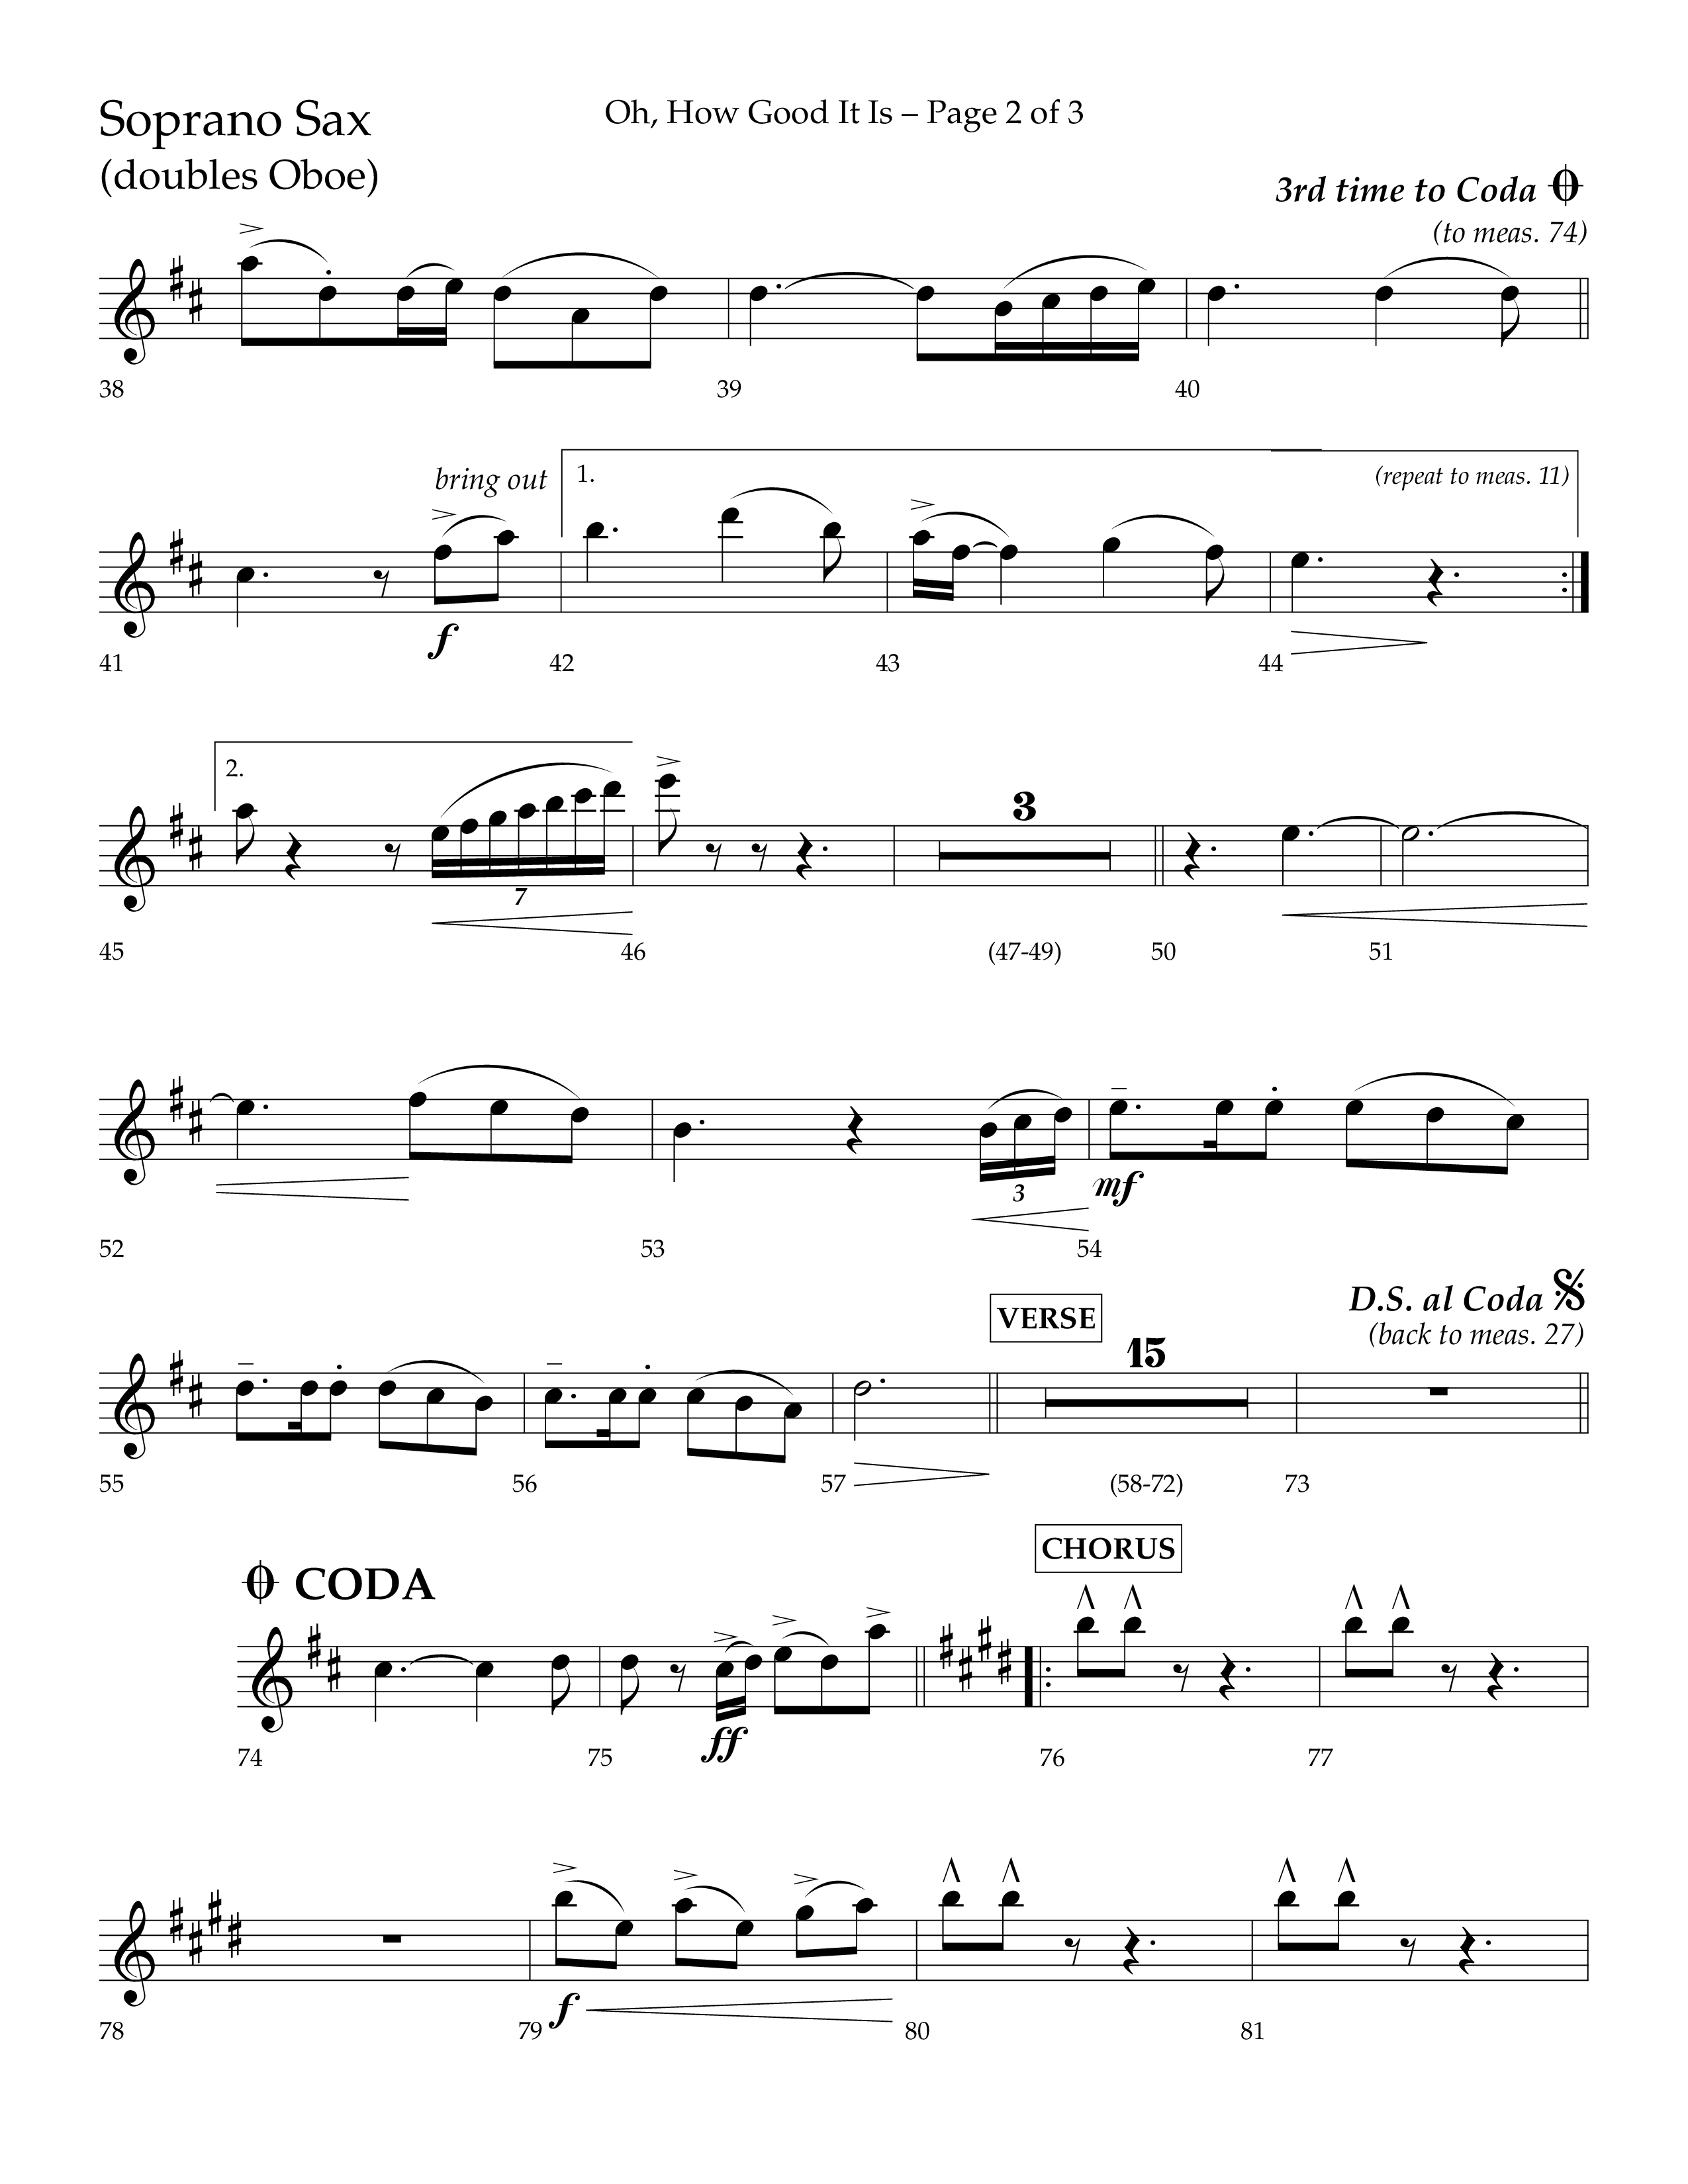 Oh How Good It Is (Choral Anthem SATB) Soprano Sax (Lifeway Choral / Arr. David Hamilton)